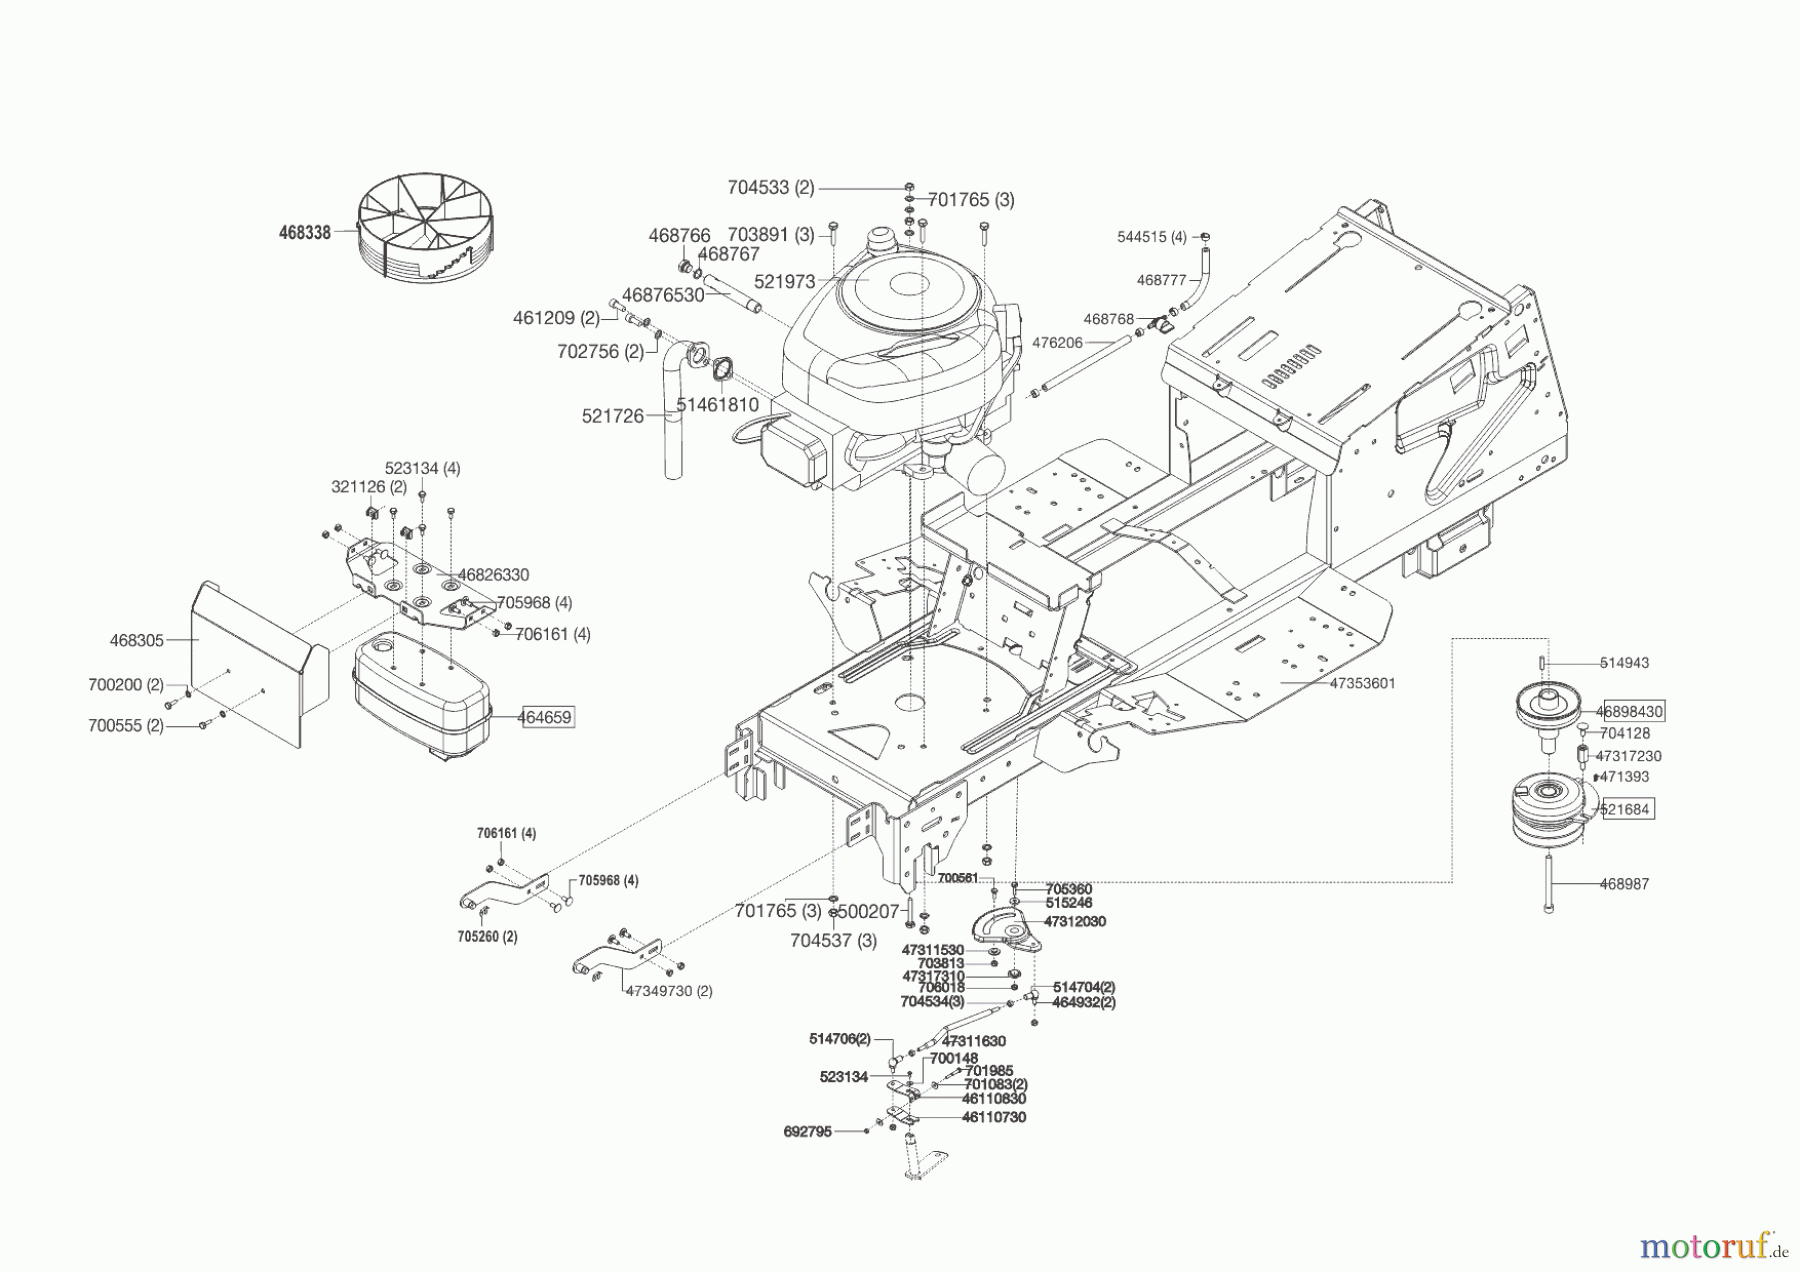  Powerline Gartentechnik Rasentraktor T 18-95.4 HD  09/2014 - 03/2016 Seite 2